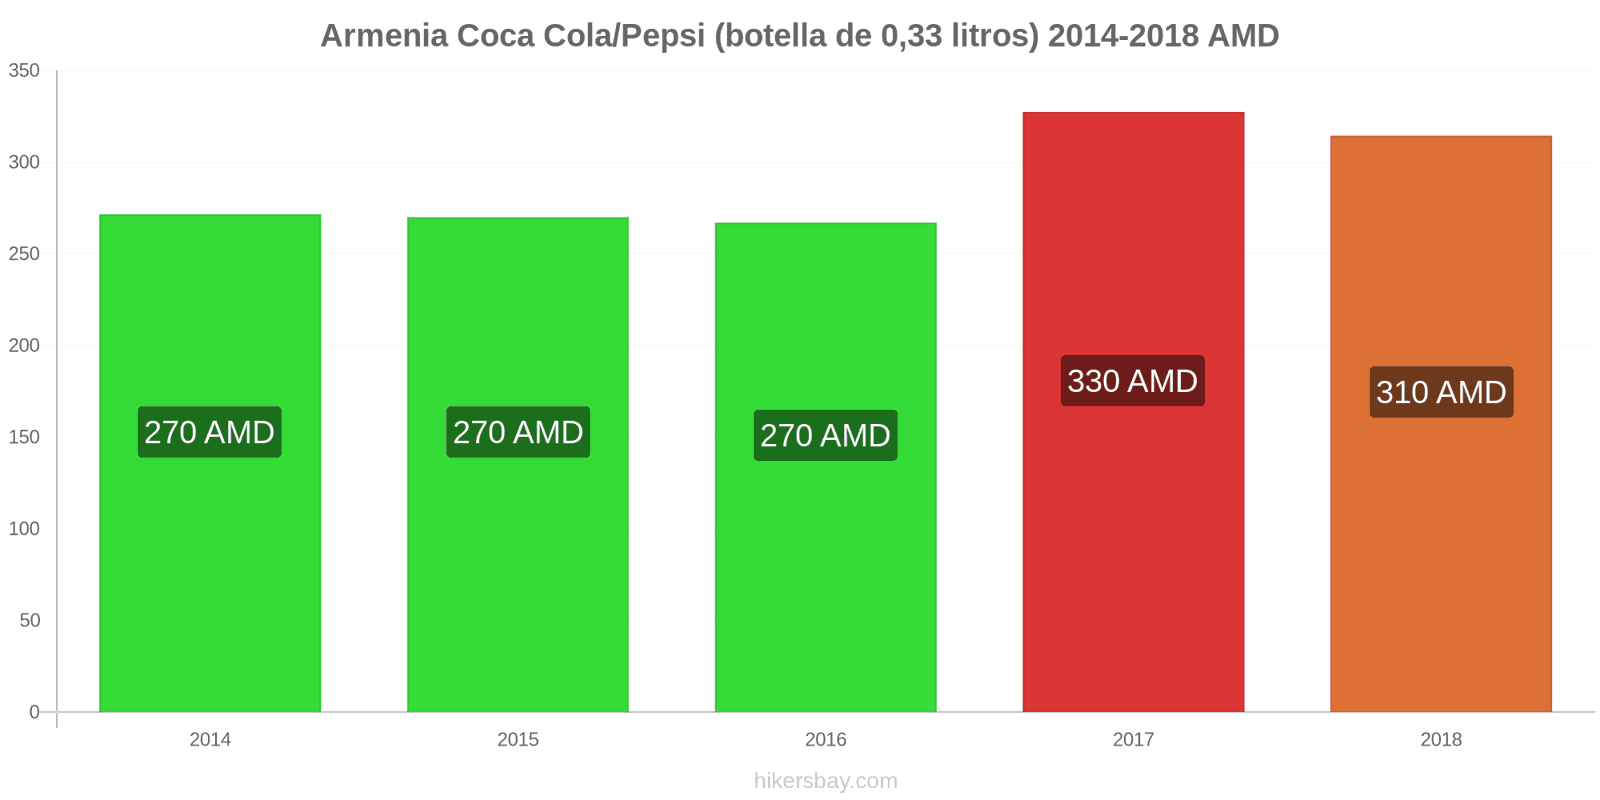 Armenia cambios de precios Coca-Cola/Pepsi (botella de 0.33 litros) hikersbay.com